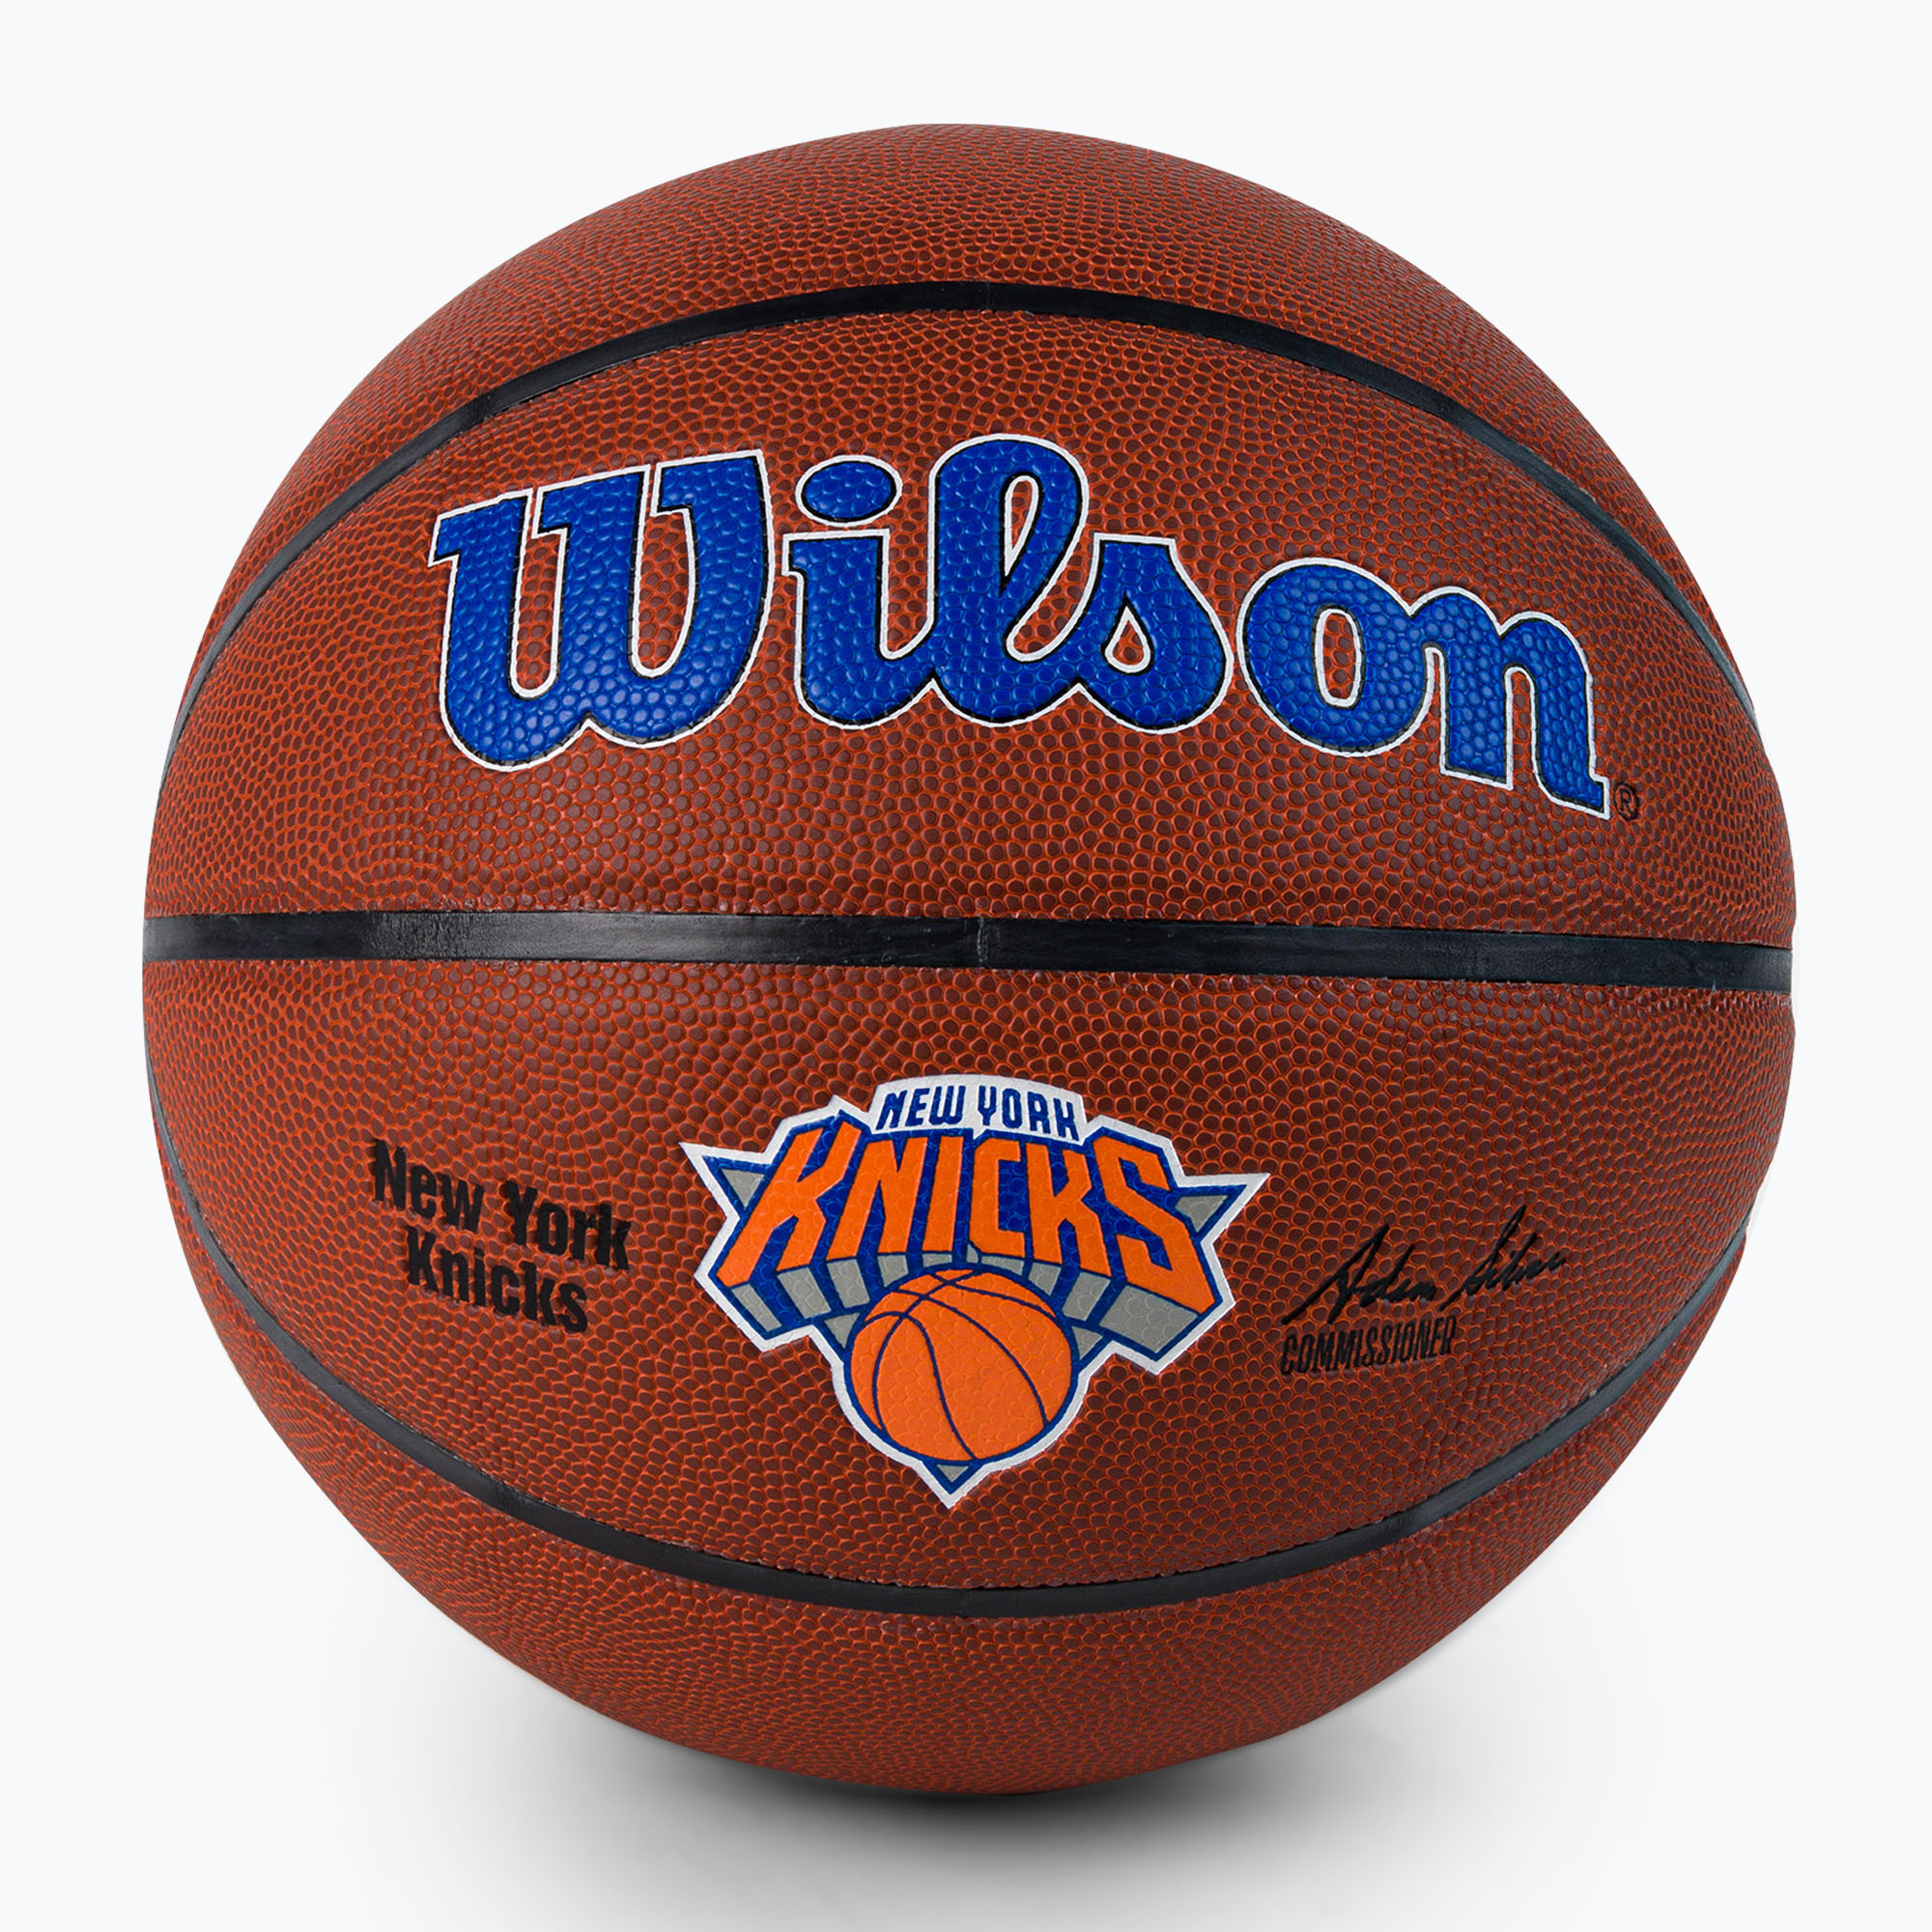 Wilson NBA Team Alliance New York Knicks basketbalová hnedá WTB3100XBNYK veľkosť 7